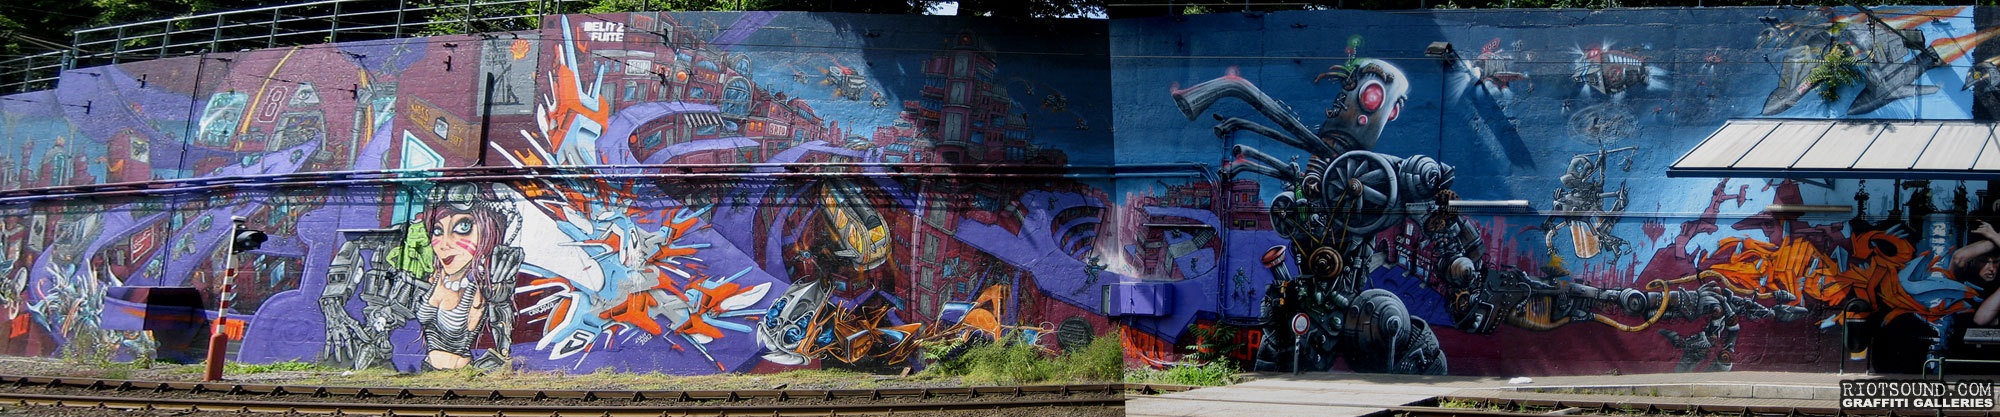 Bruxelles Graffito